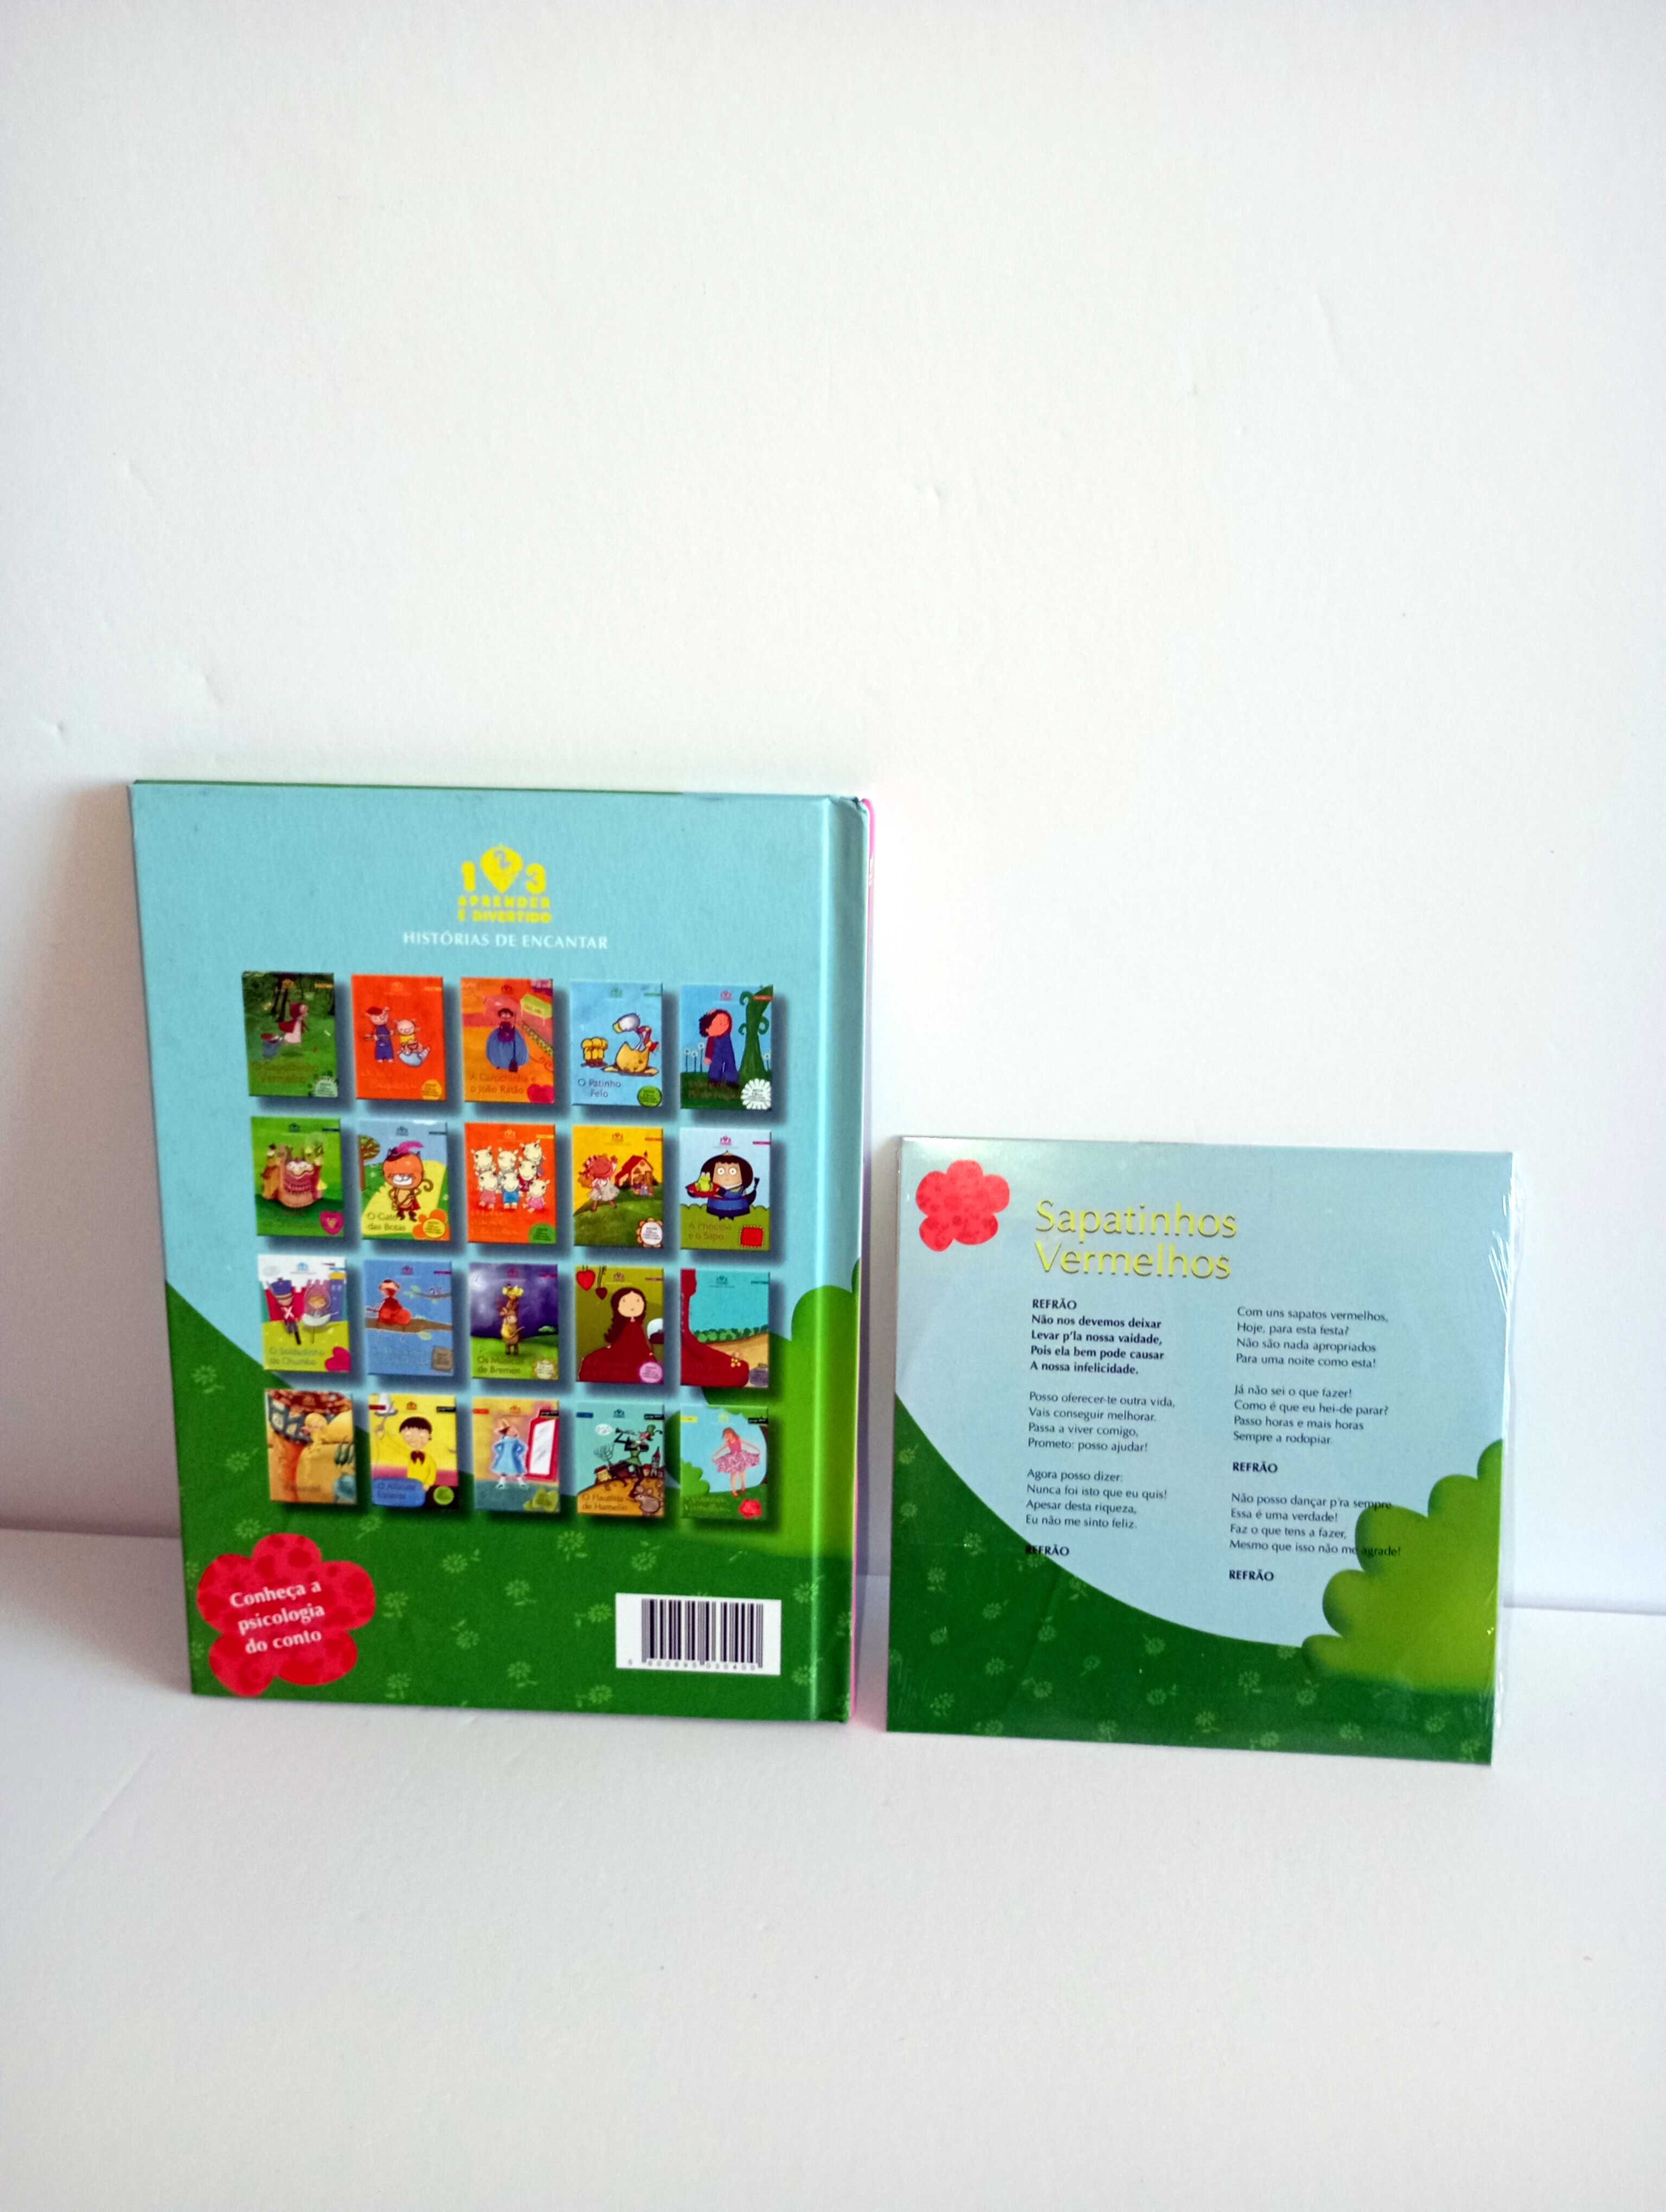 Sapatinhos Vermelhos - Livro + CD - Coleção Histórias de encantar